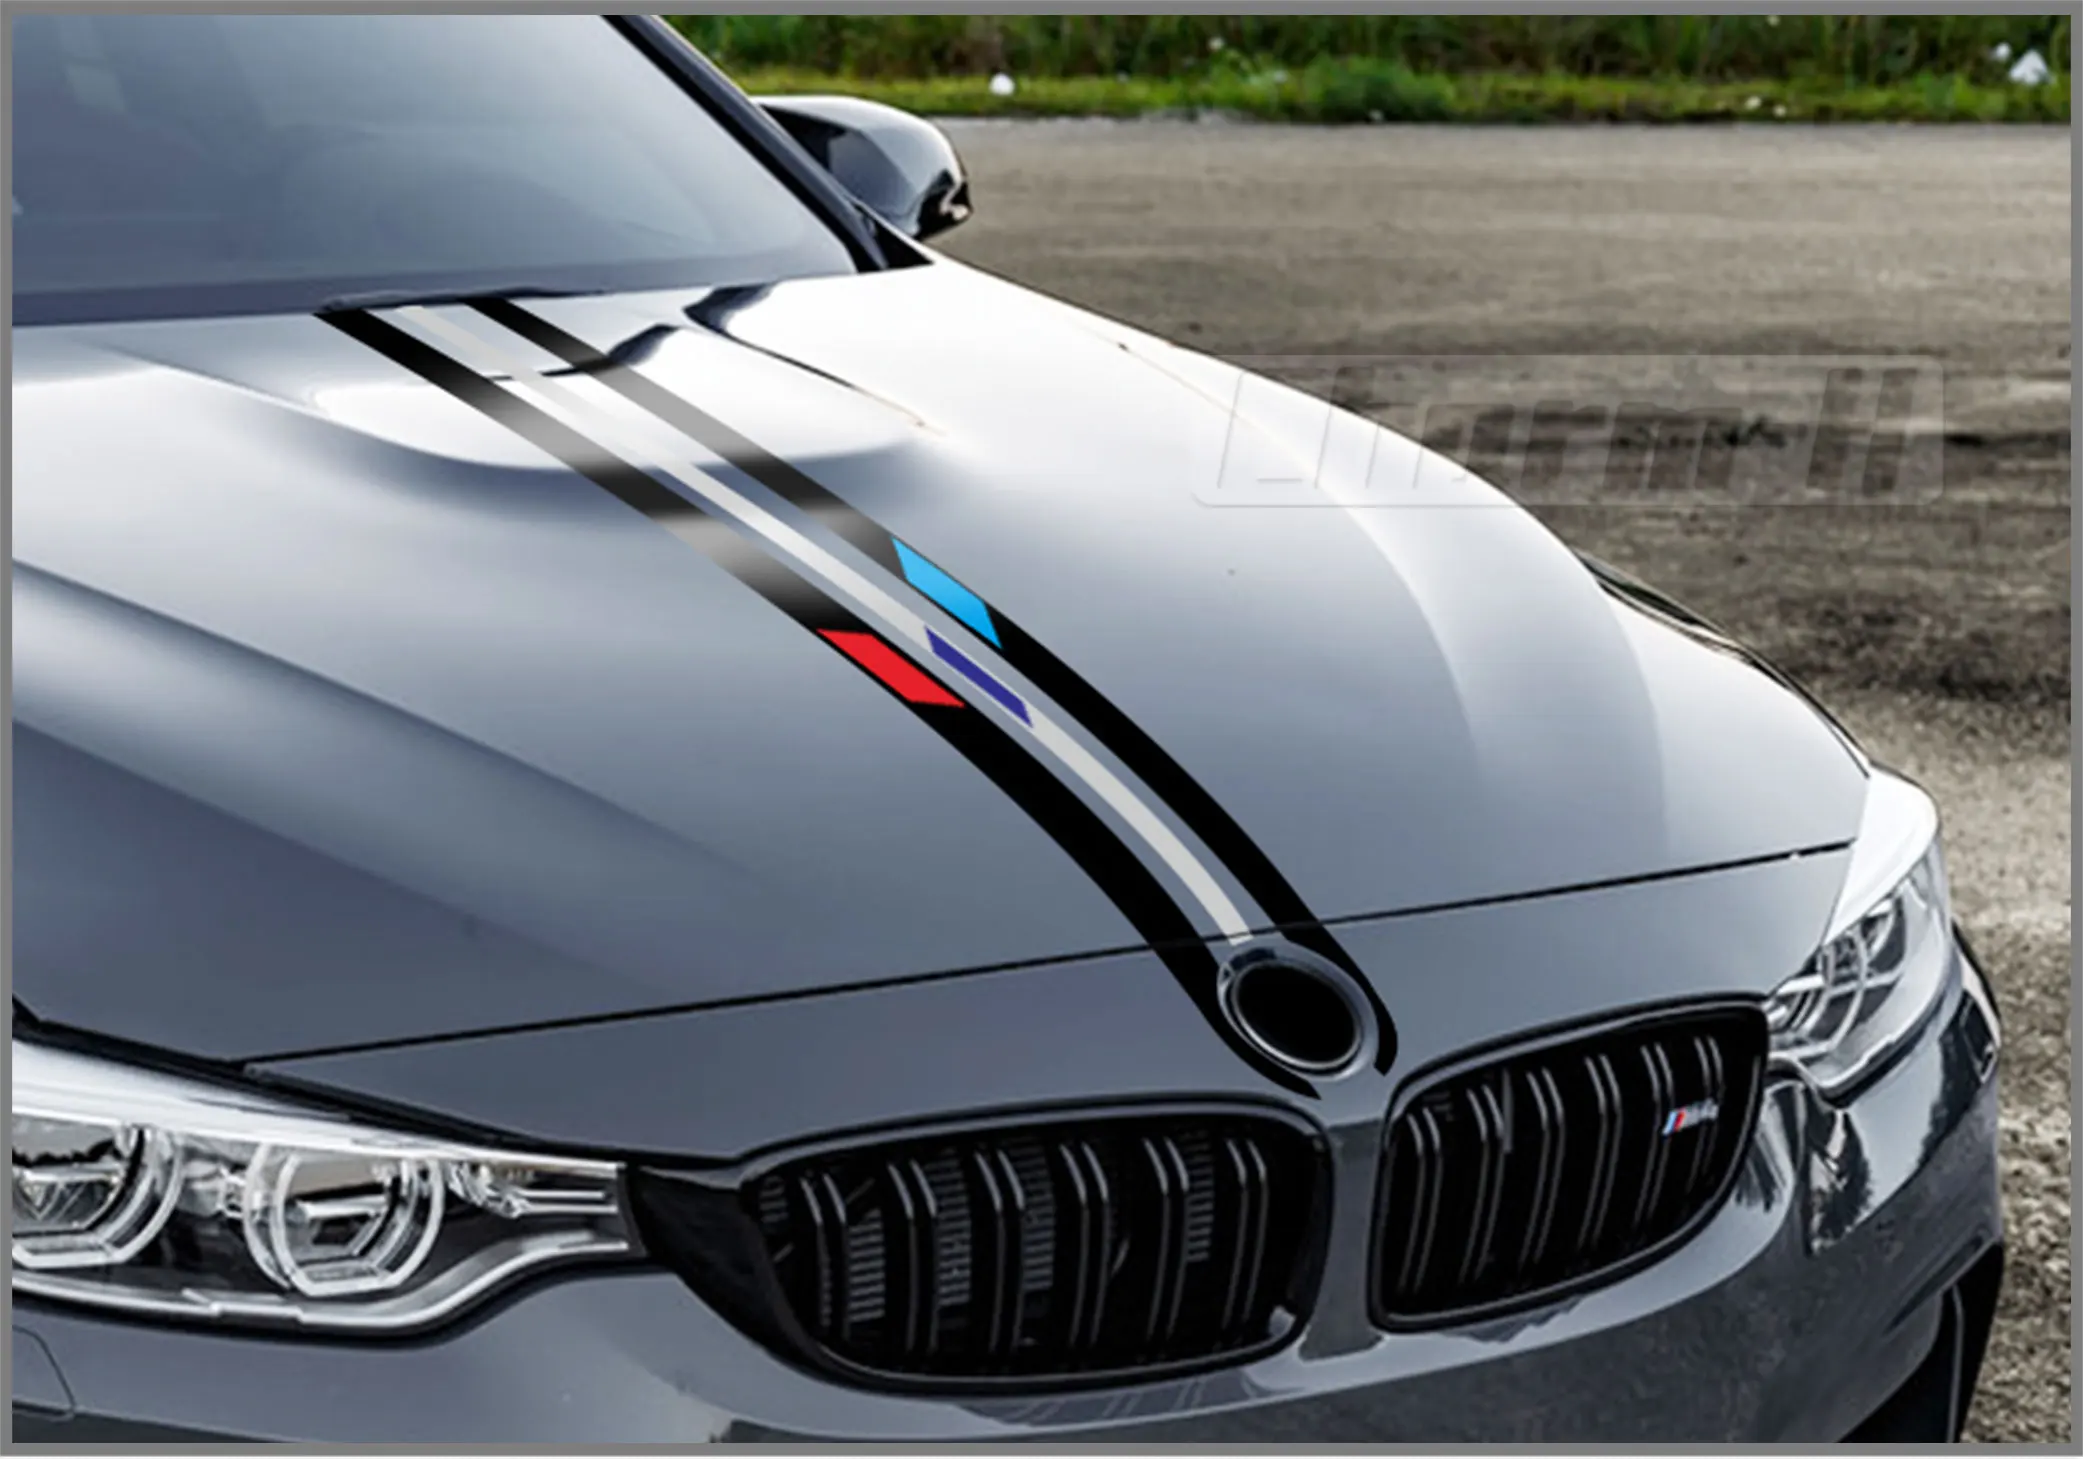 Для BMW F20 F22 F30 F32 F10 G30 G20 E60 E46 E90 Z4 X3 X4 X5 X6 автомобиля капот Racing Stripes линии наклейка крышка двигателя Стикеры